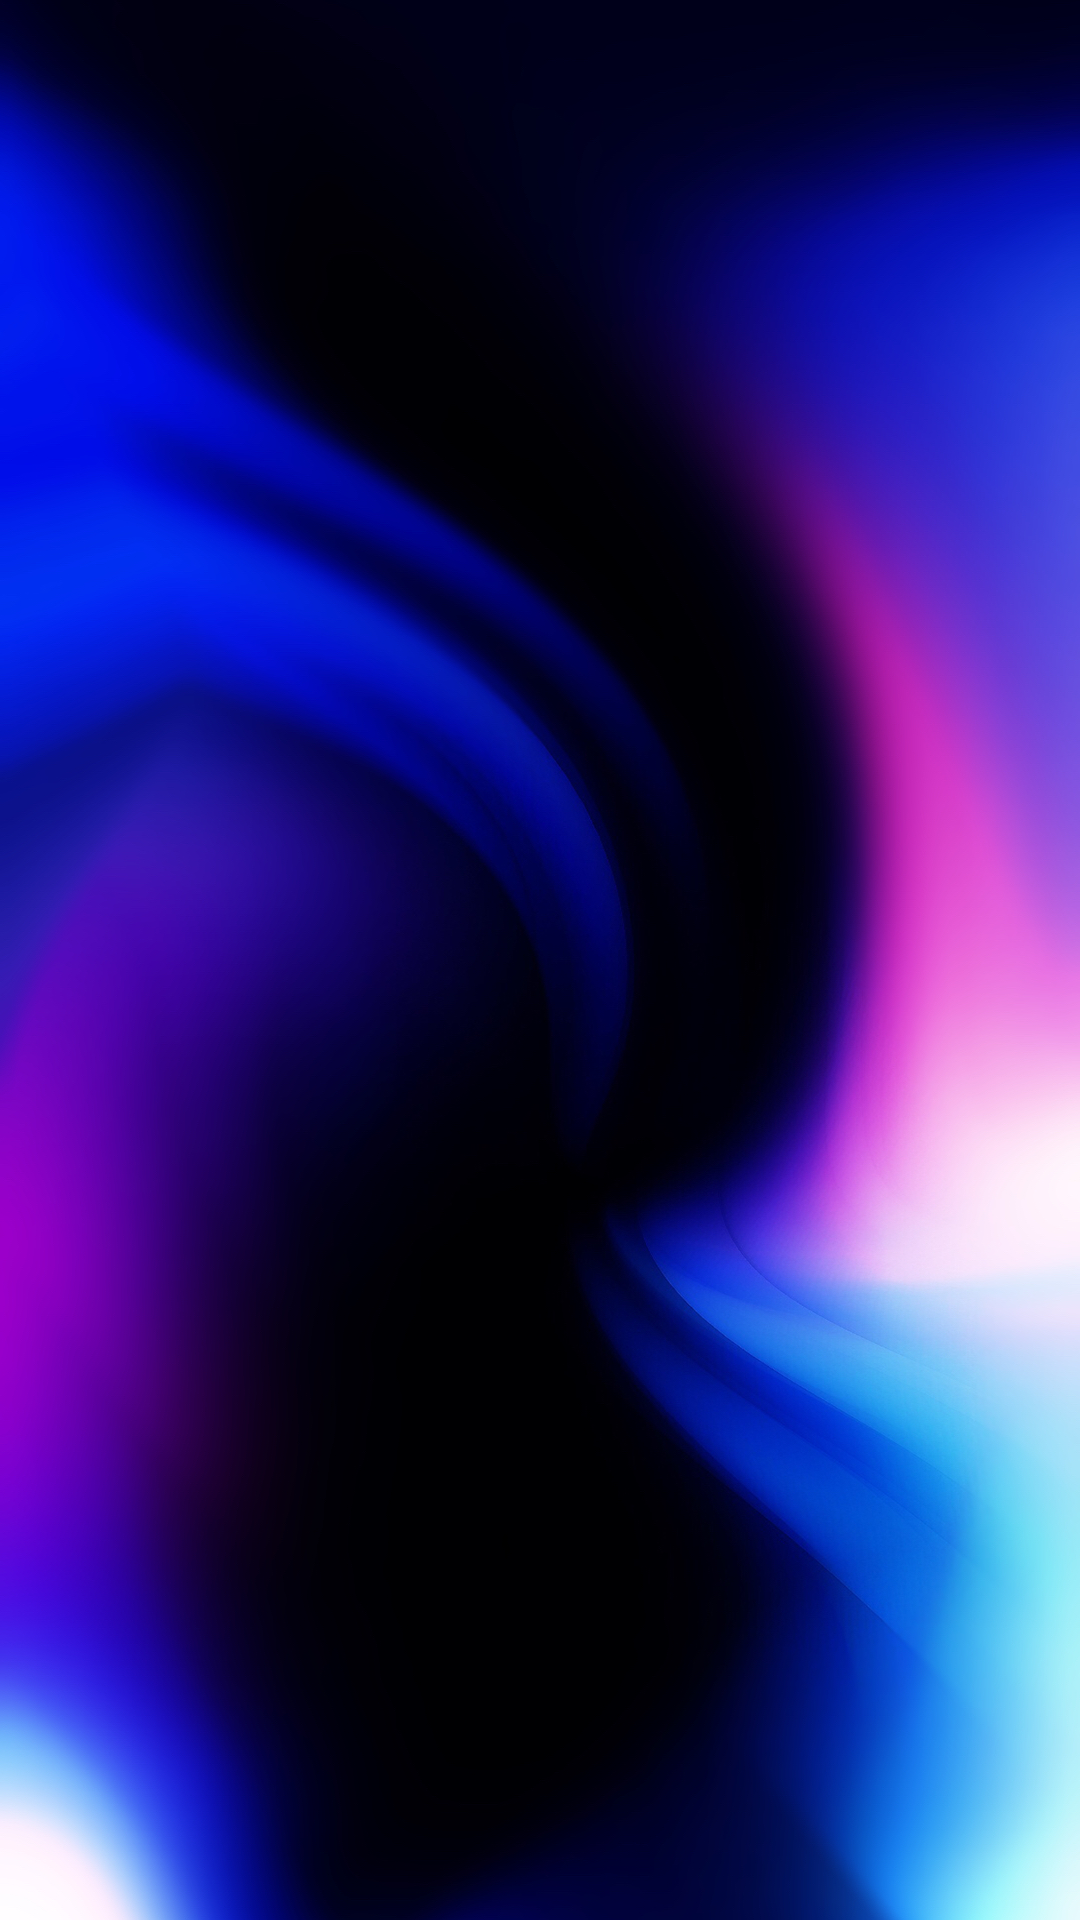 abstrakte iphone wallpaper,blau,violett,lila,elektrisches blau,licht